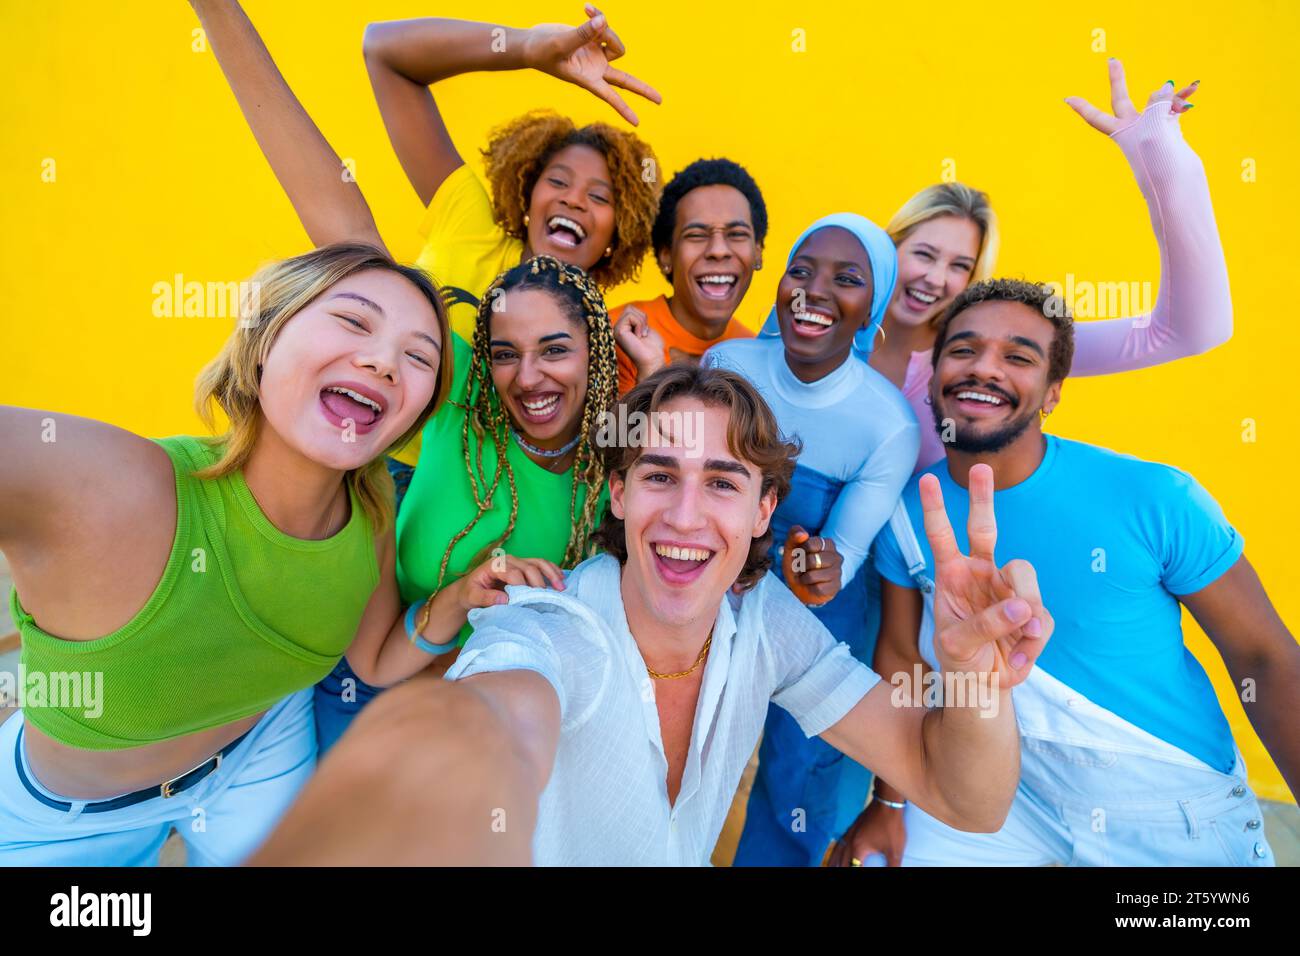 Giovani di diverse etnie che fanno un selfie felice a un raduno accanto a uno sfondo giallo Foto Stock